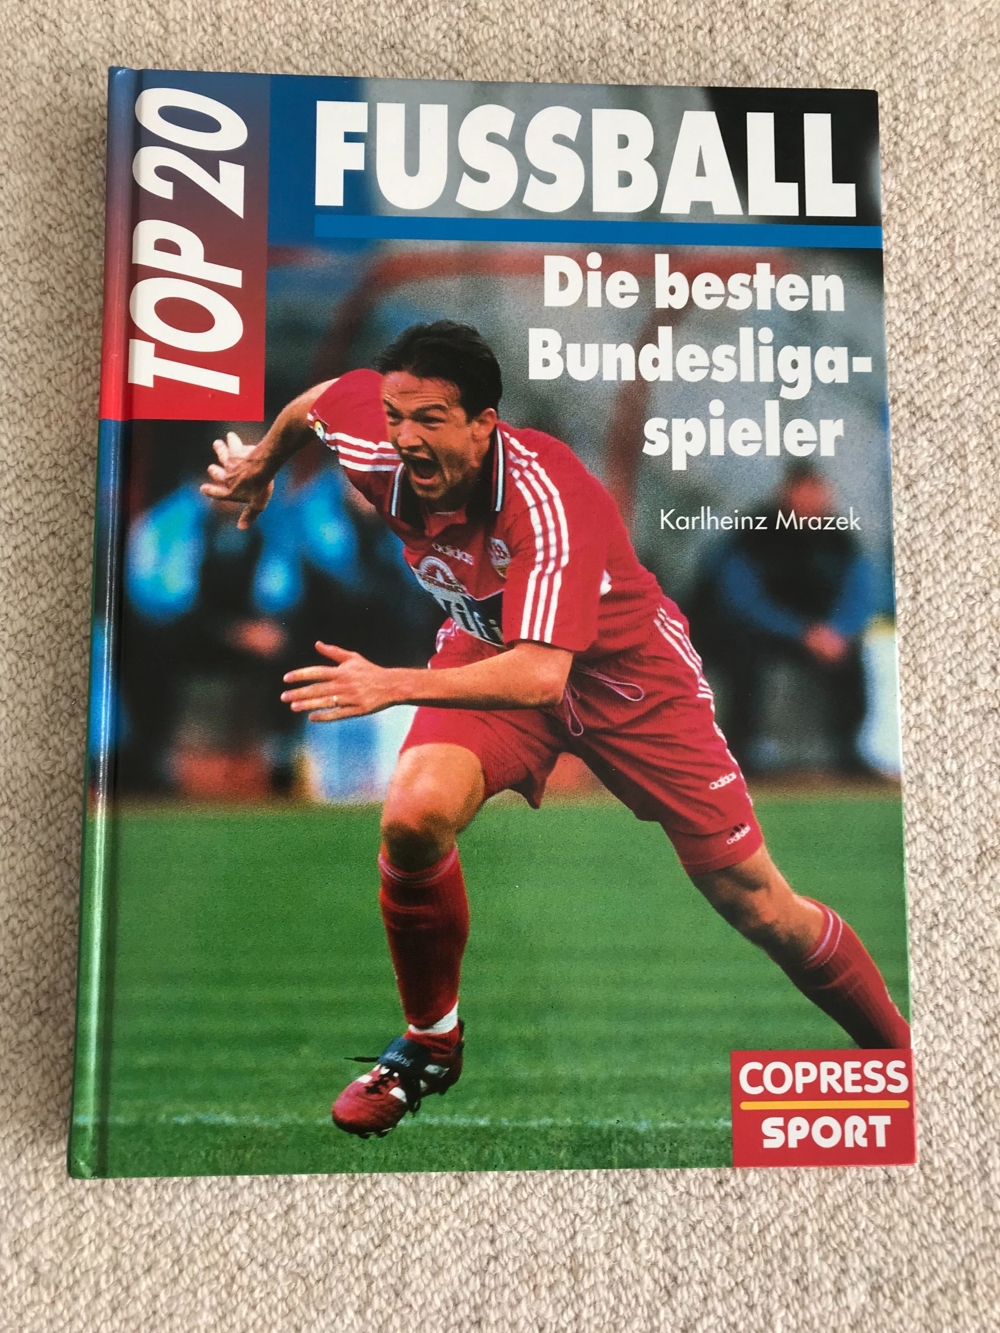 Buch "Fußball TOP 20 - Die besten Bundesligaspieler"